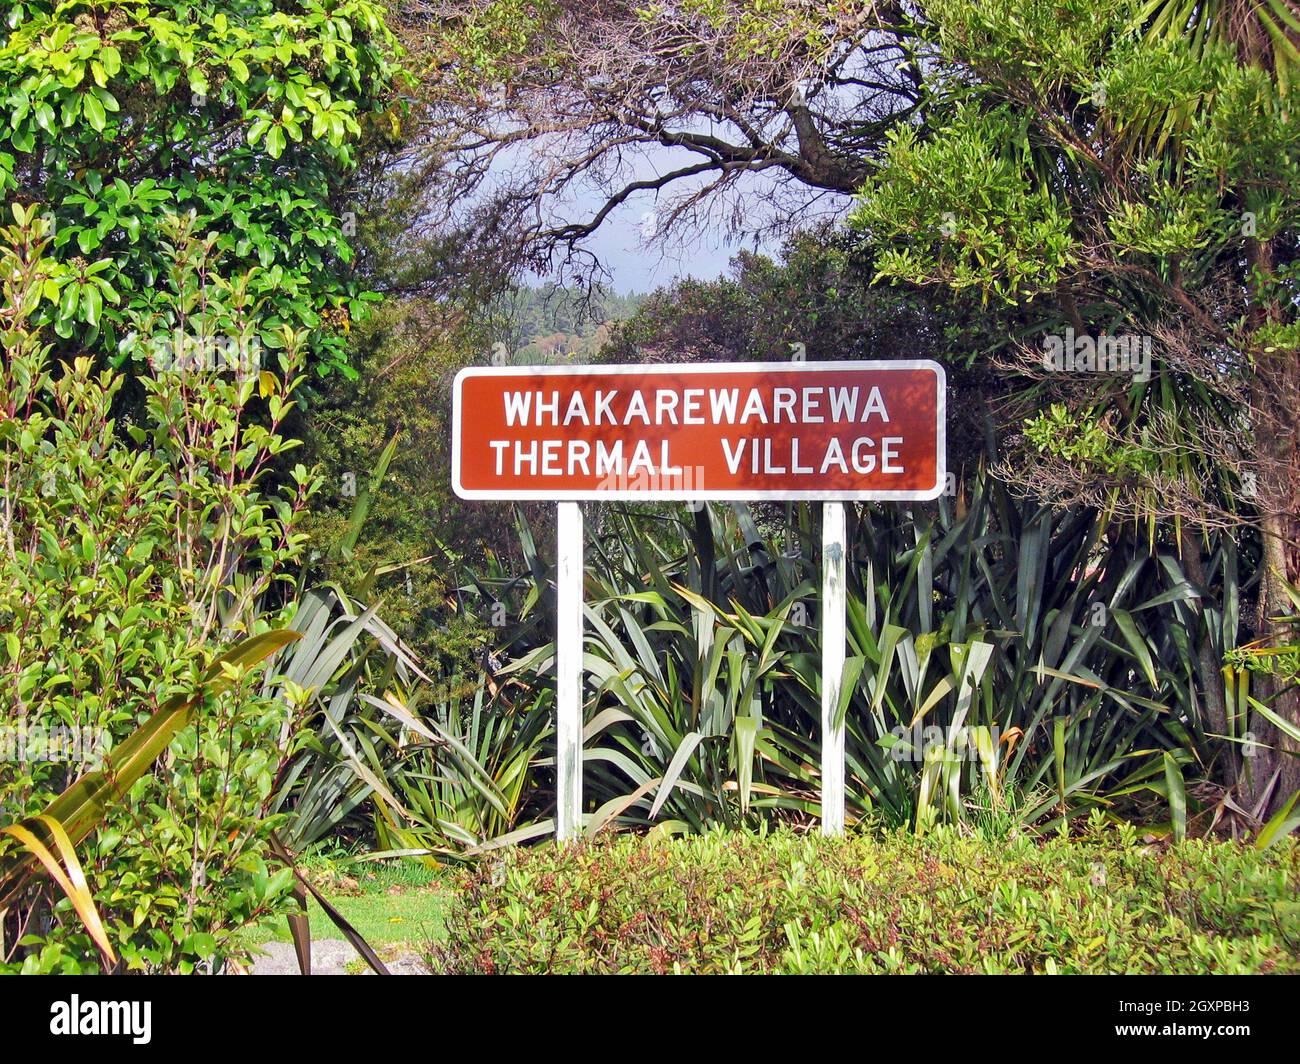 Das Whakarewarewa Thermal Village Schild vor dem lebenden Maori Dorf in Rotorua, Neuseeland. Das Dorf, eine wichtige Touristenattraktion, beherbergt seit Jahrzehnten Maori, die zeigen, wie sie mit den natürlichen Elementen seiner vulkanischen Landschaft leben. Stockfoto